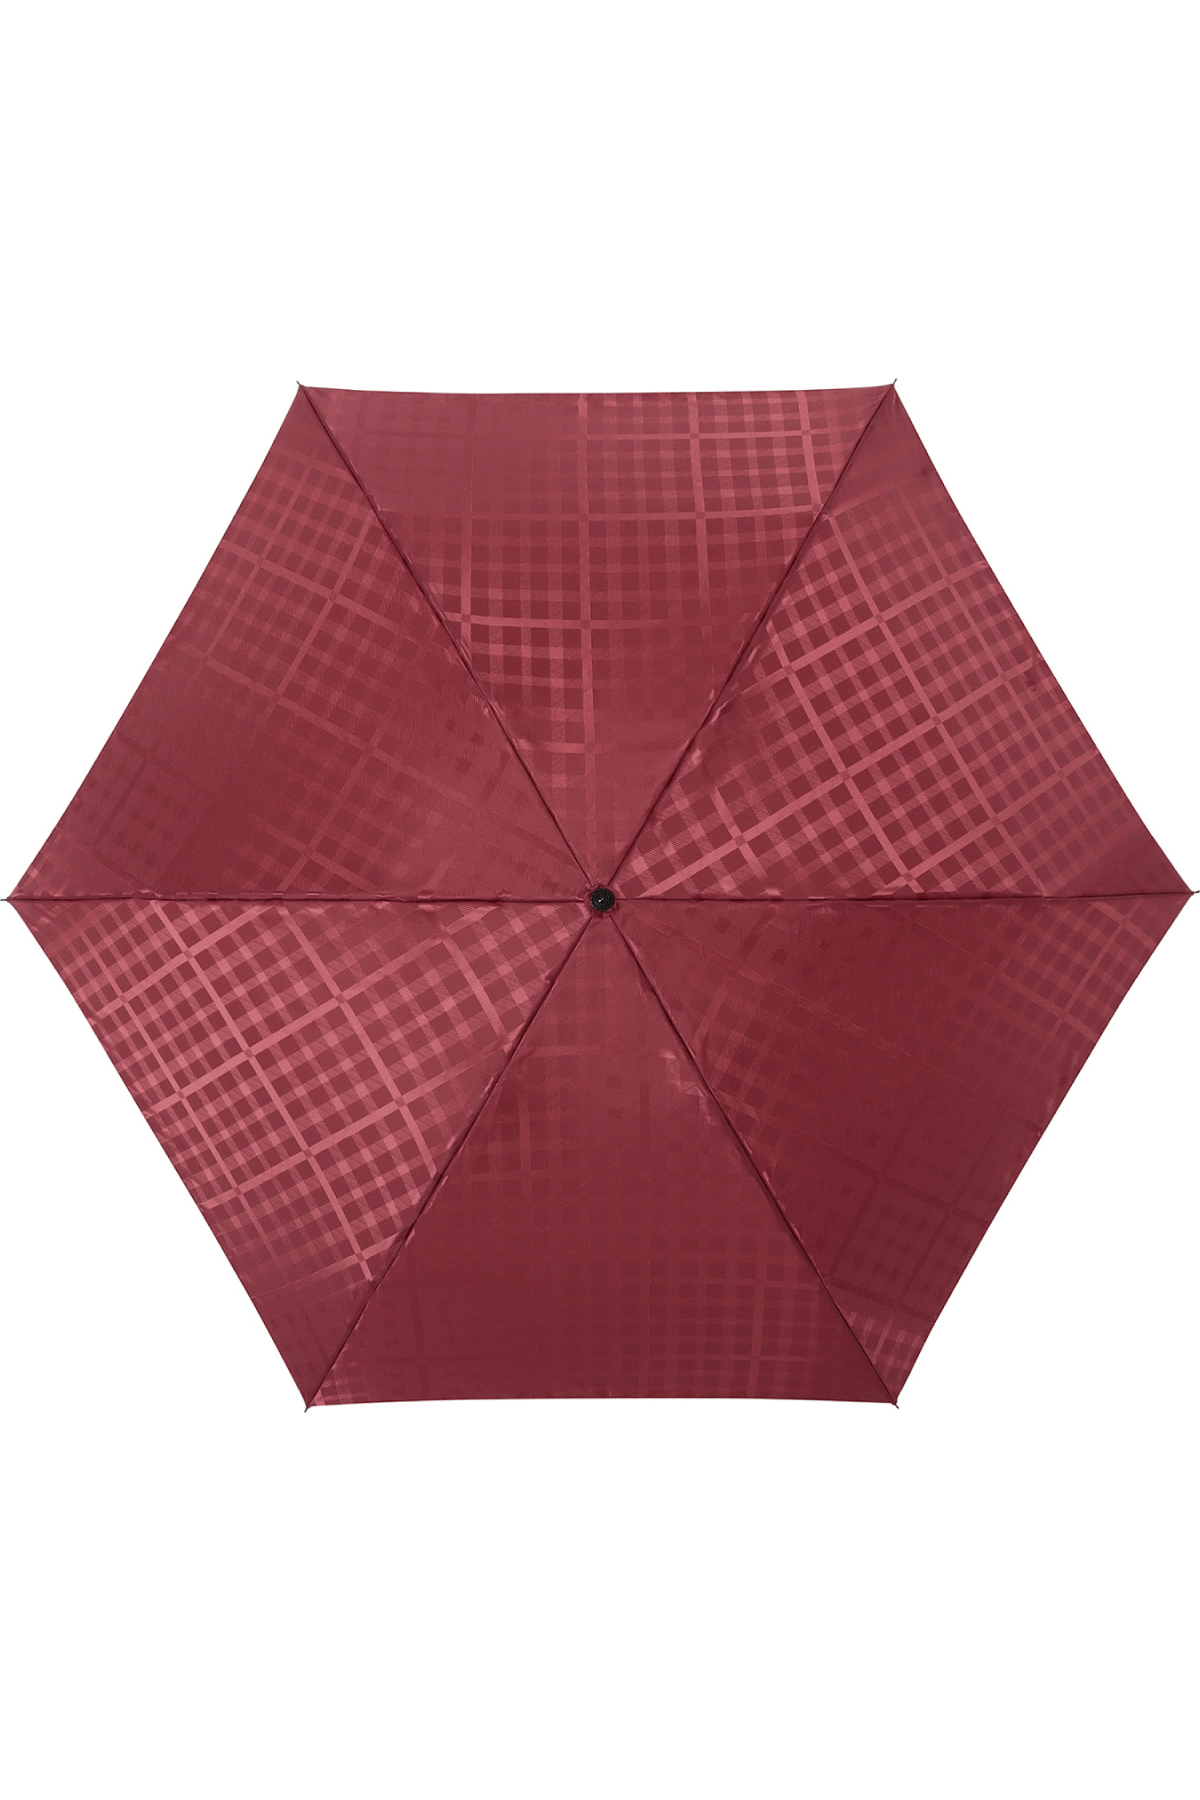 【雨傘】ミニ折りたたみ傘ジャカード 詳細画像 7